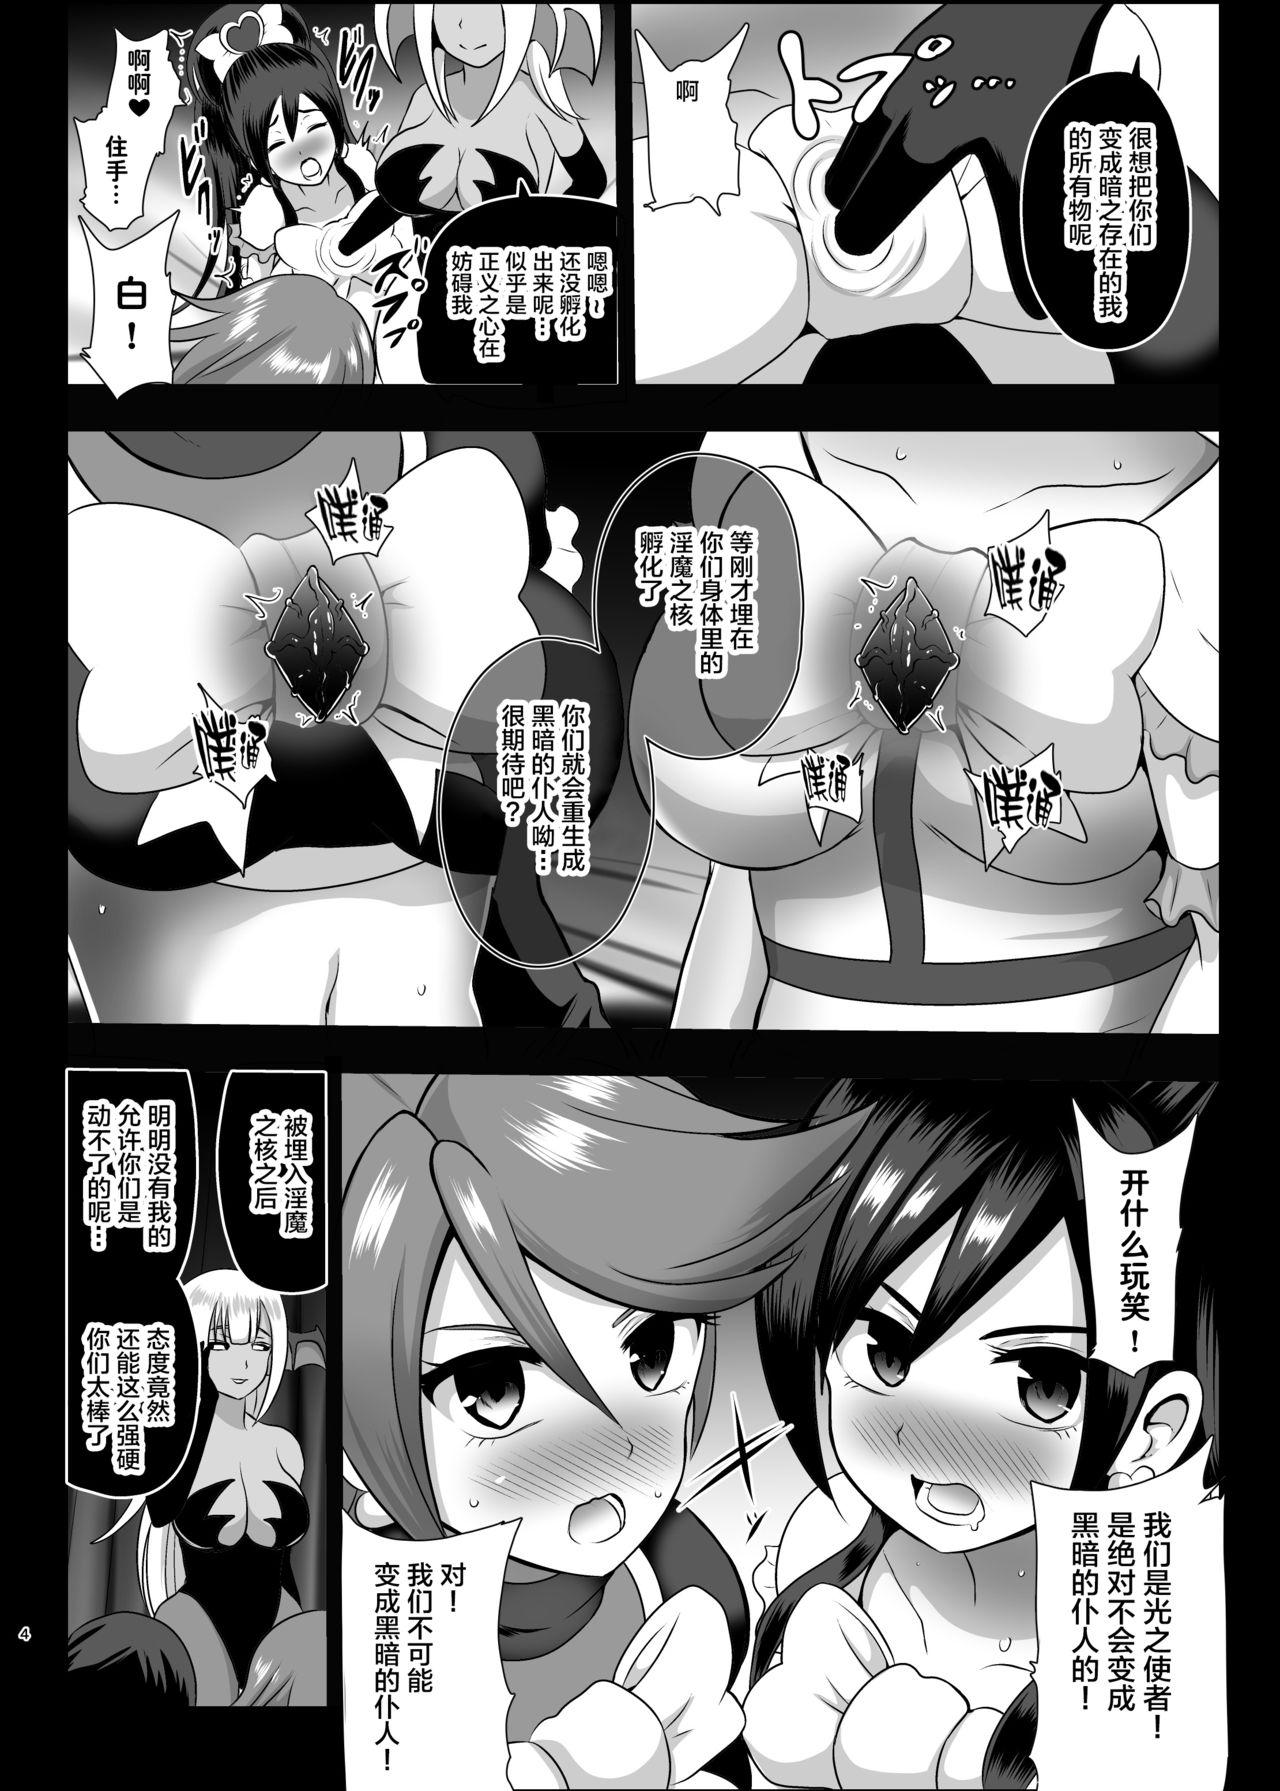 Analfuck Inma Tensei - Futari wa pretty cure Short - Page 4